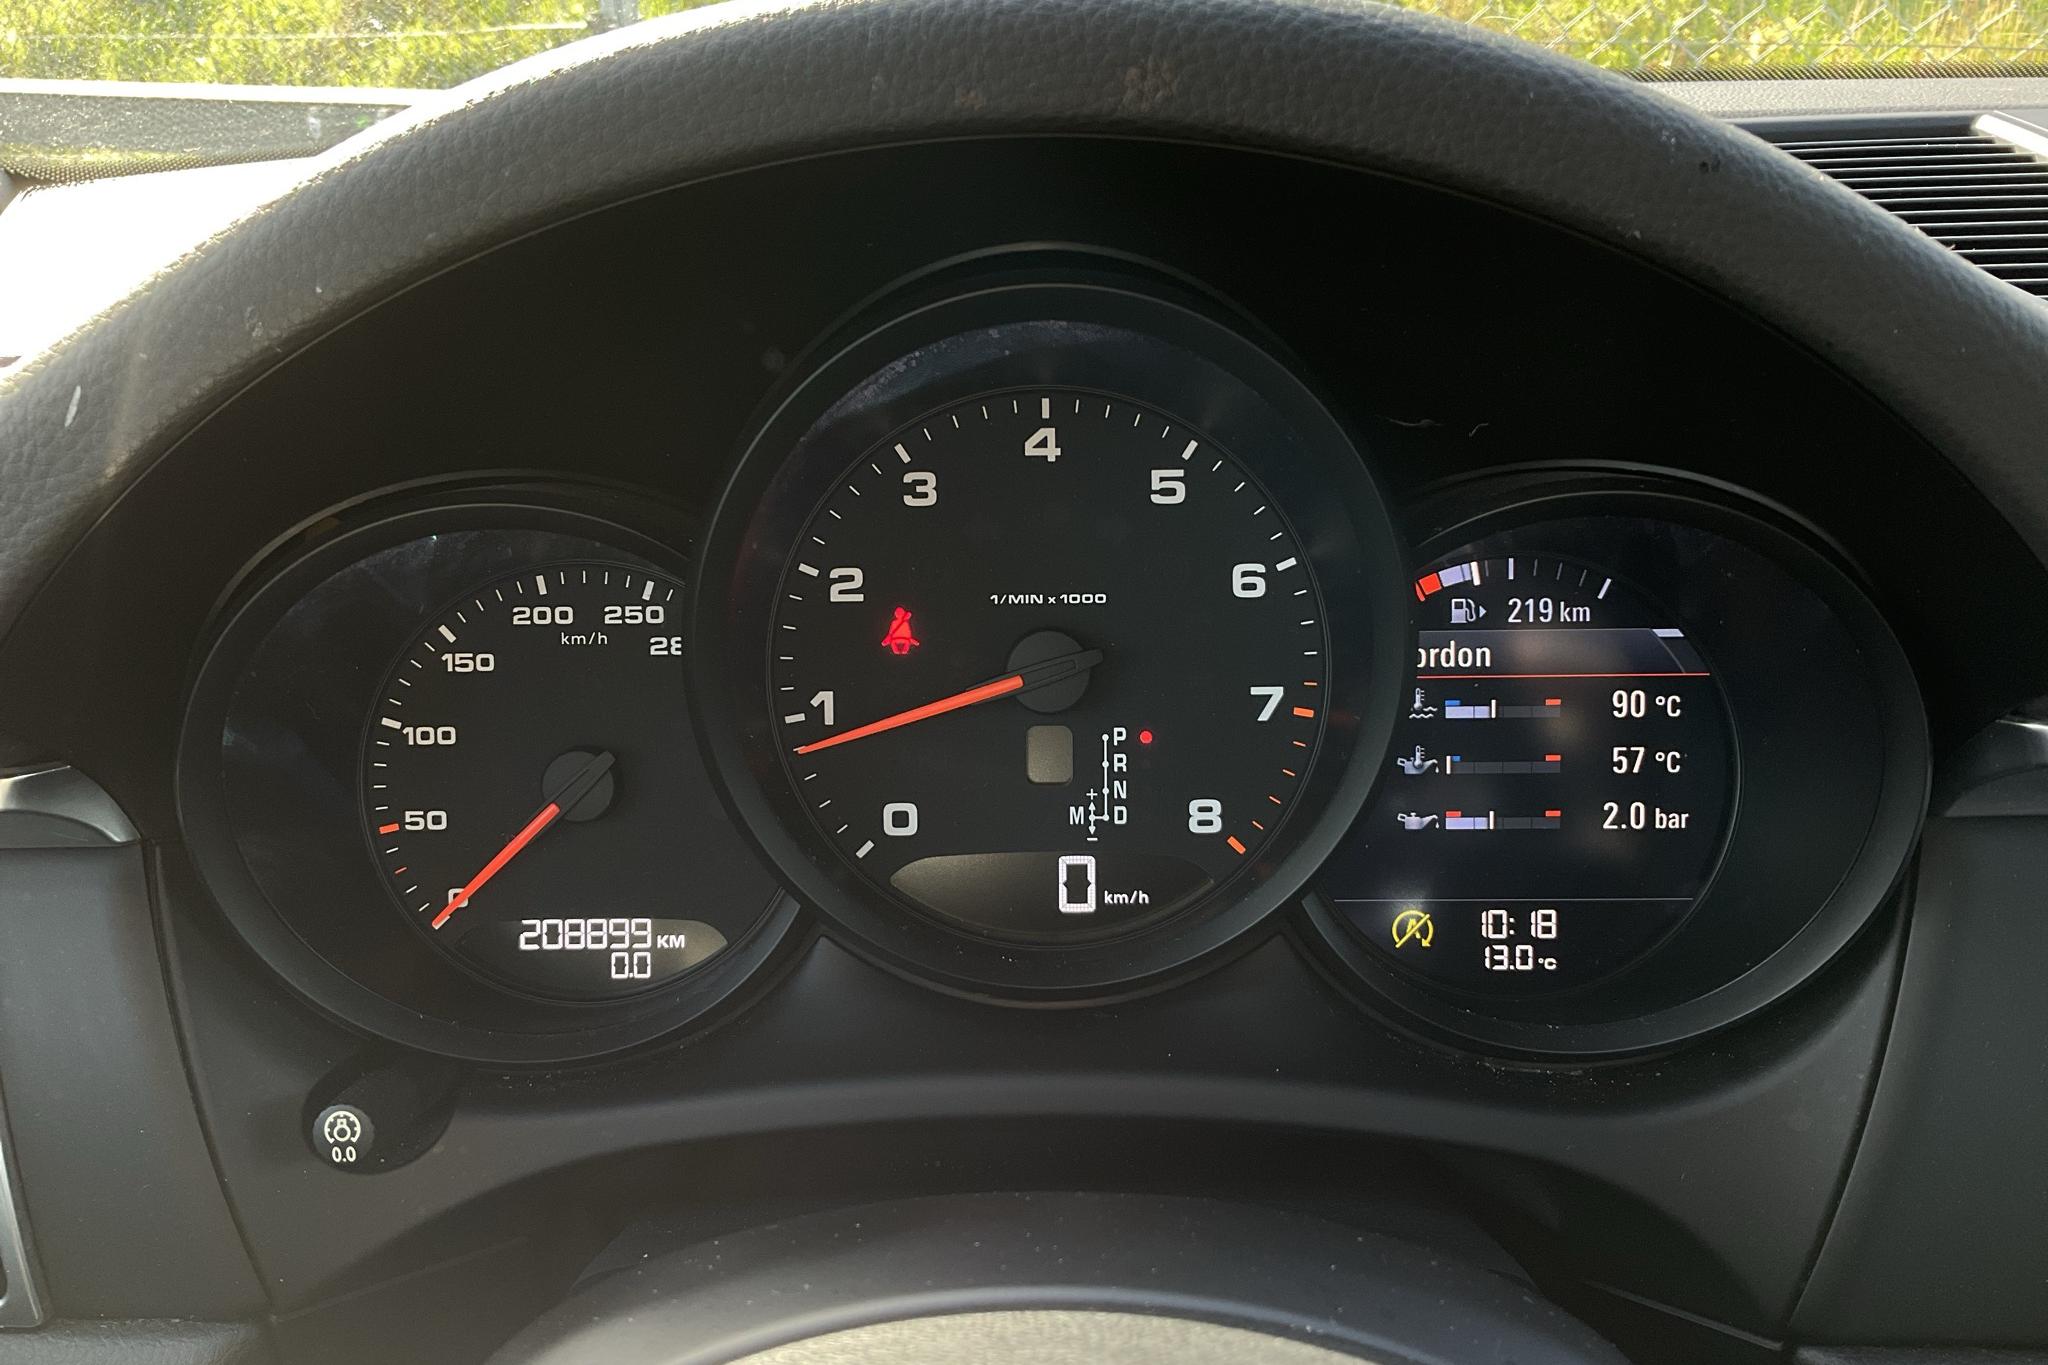 Porsche Macan 2.0 (252hk) - 208 900 km - Automaattinen - valkoinen - 2018